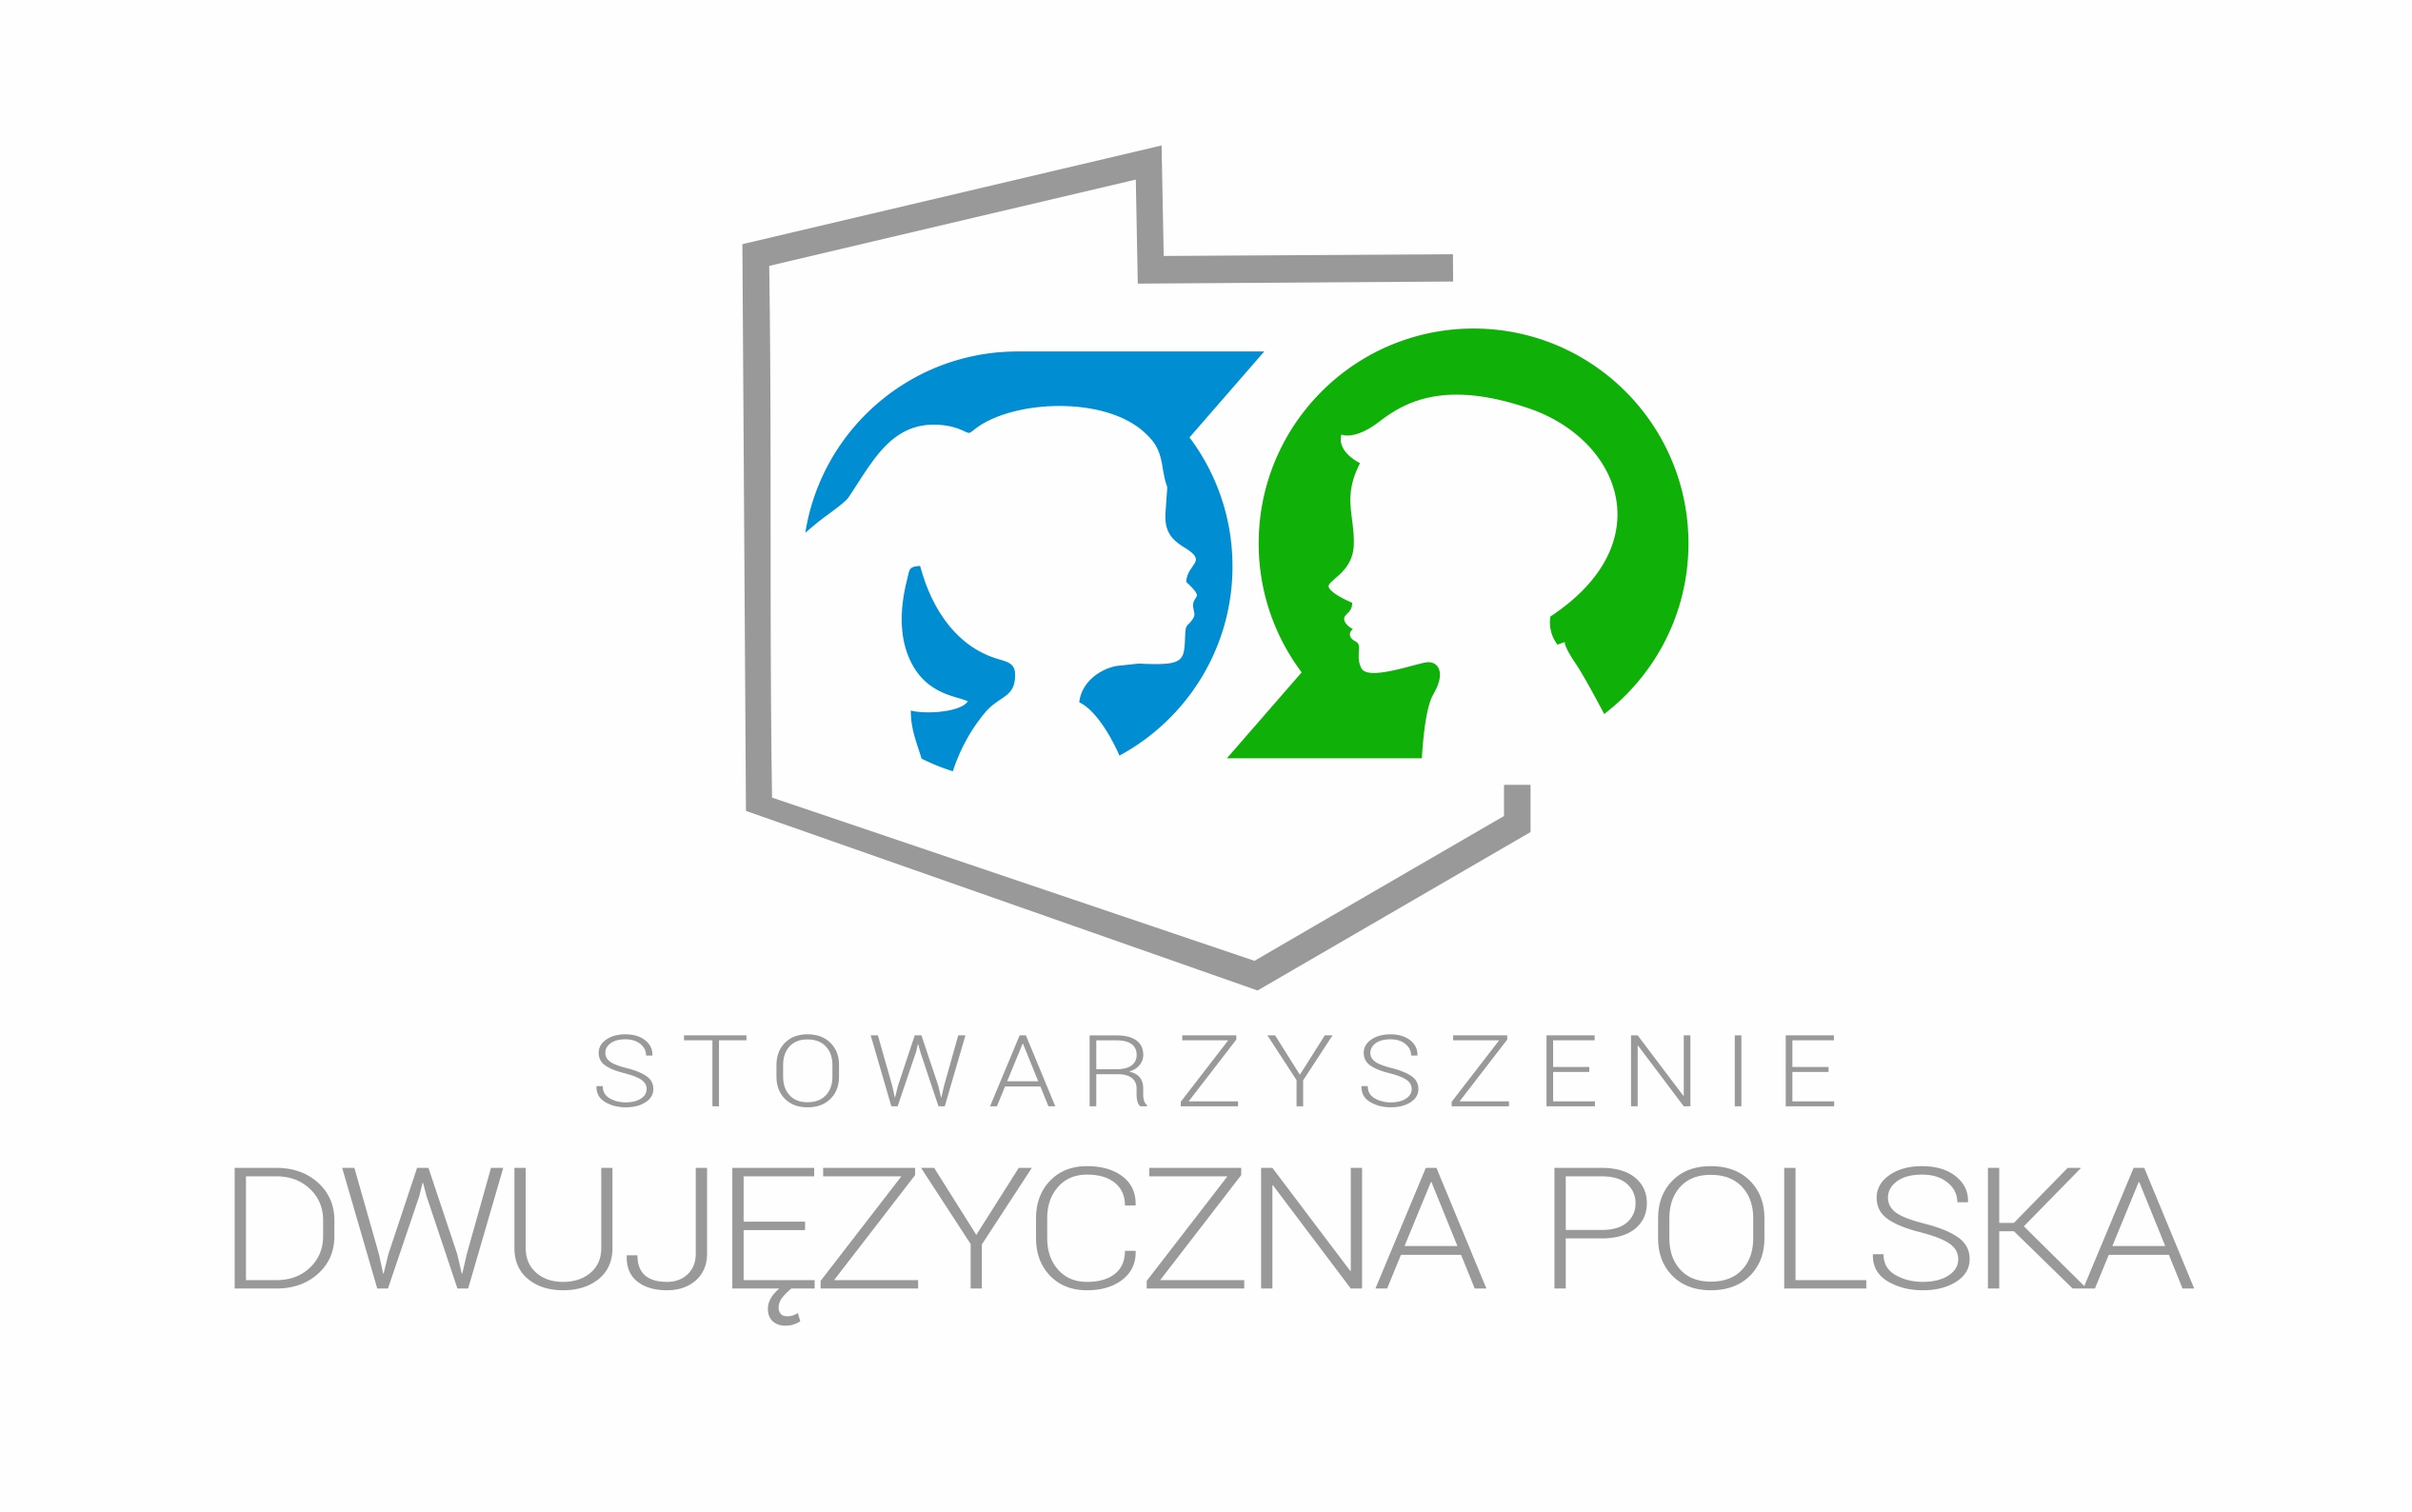 Stowarzyszenie Dwujęzyczna Polska wspiera misję Programu Powszechnej Dwujęzyczności